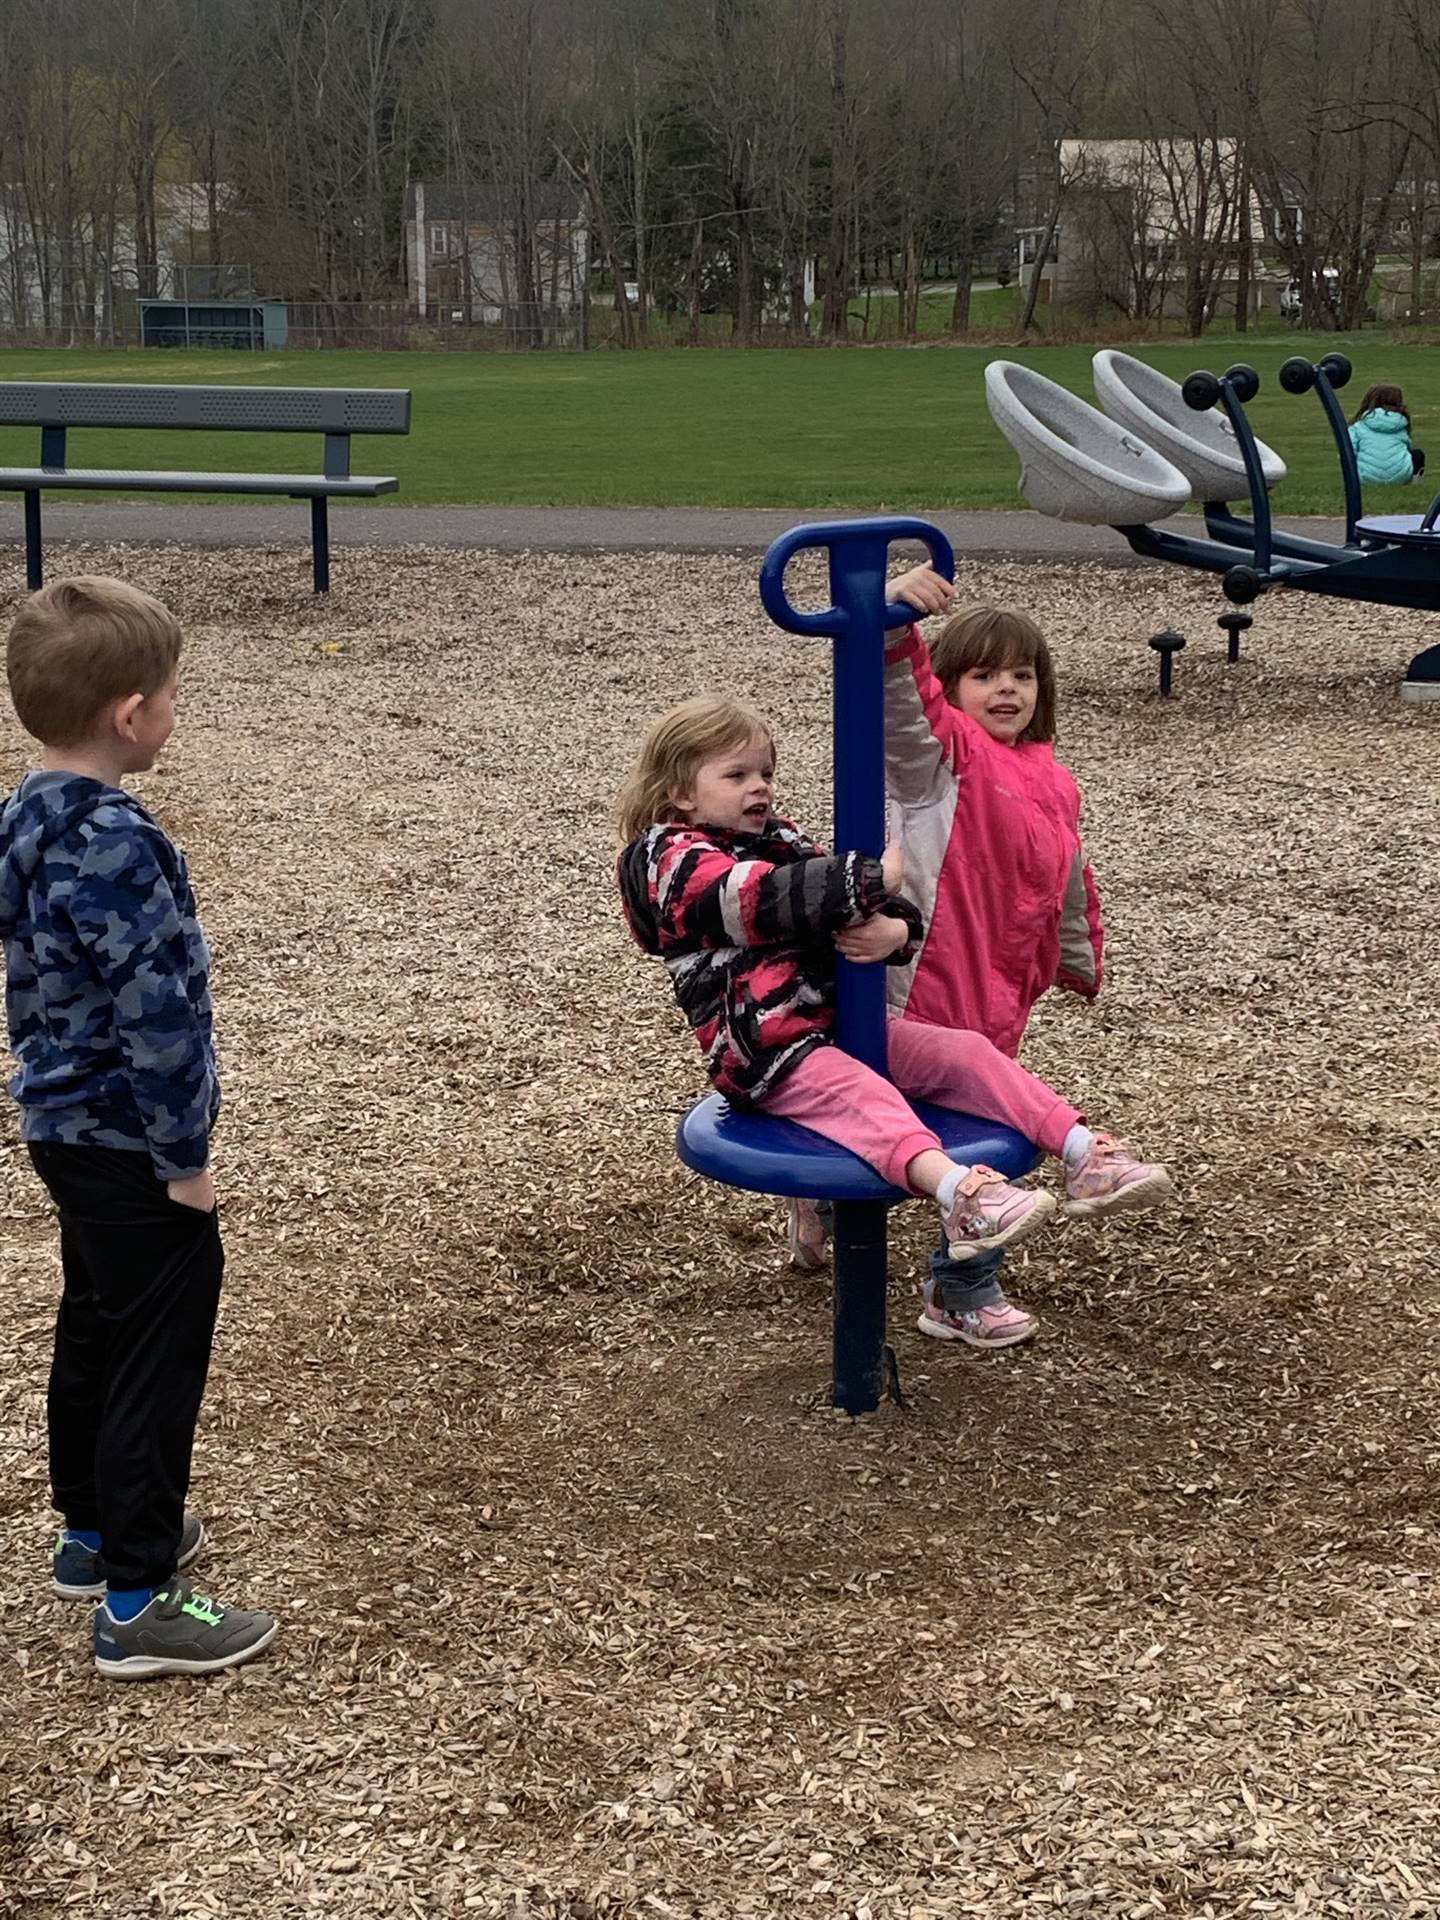 2 children spinning on a playground spinner